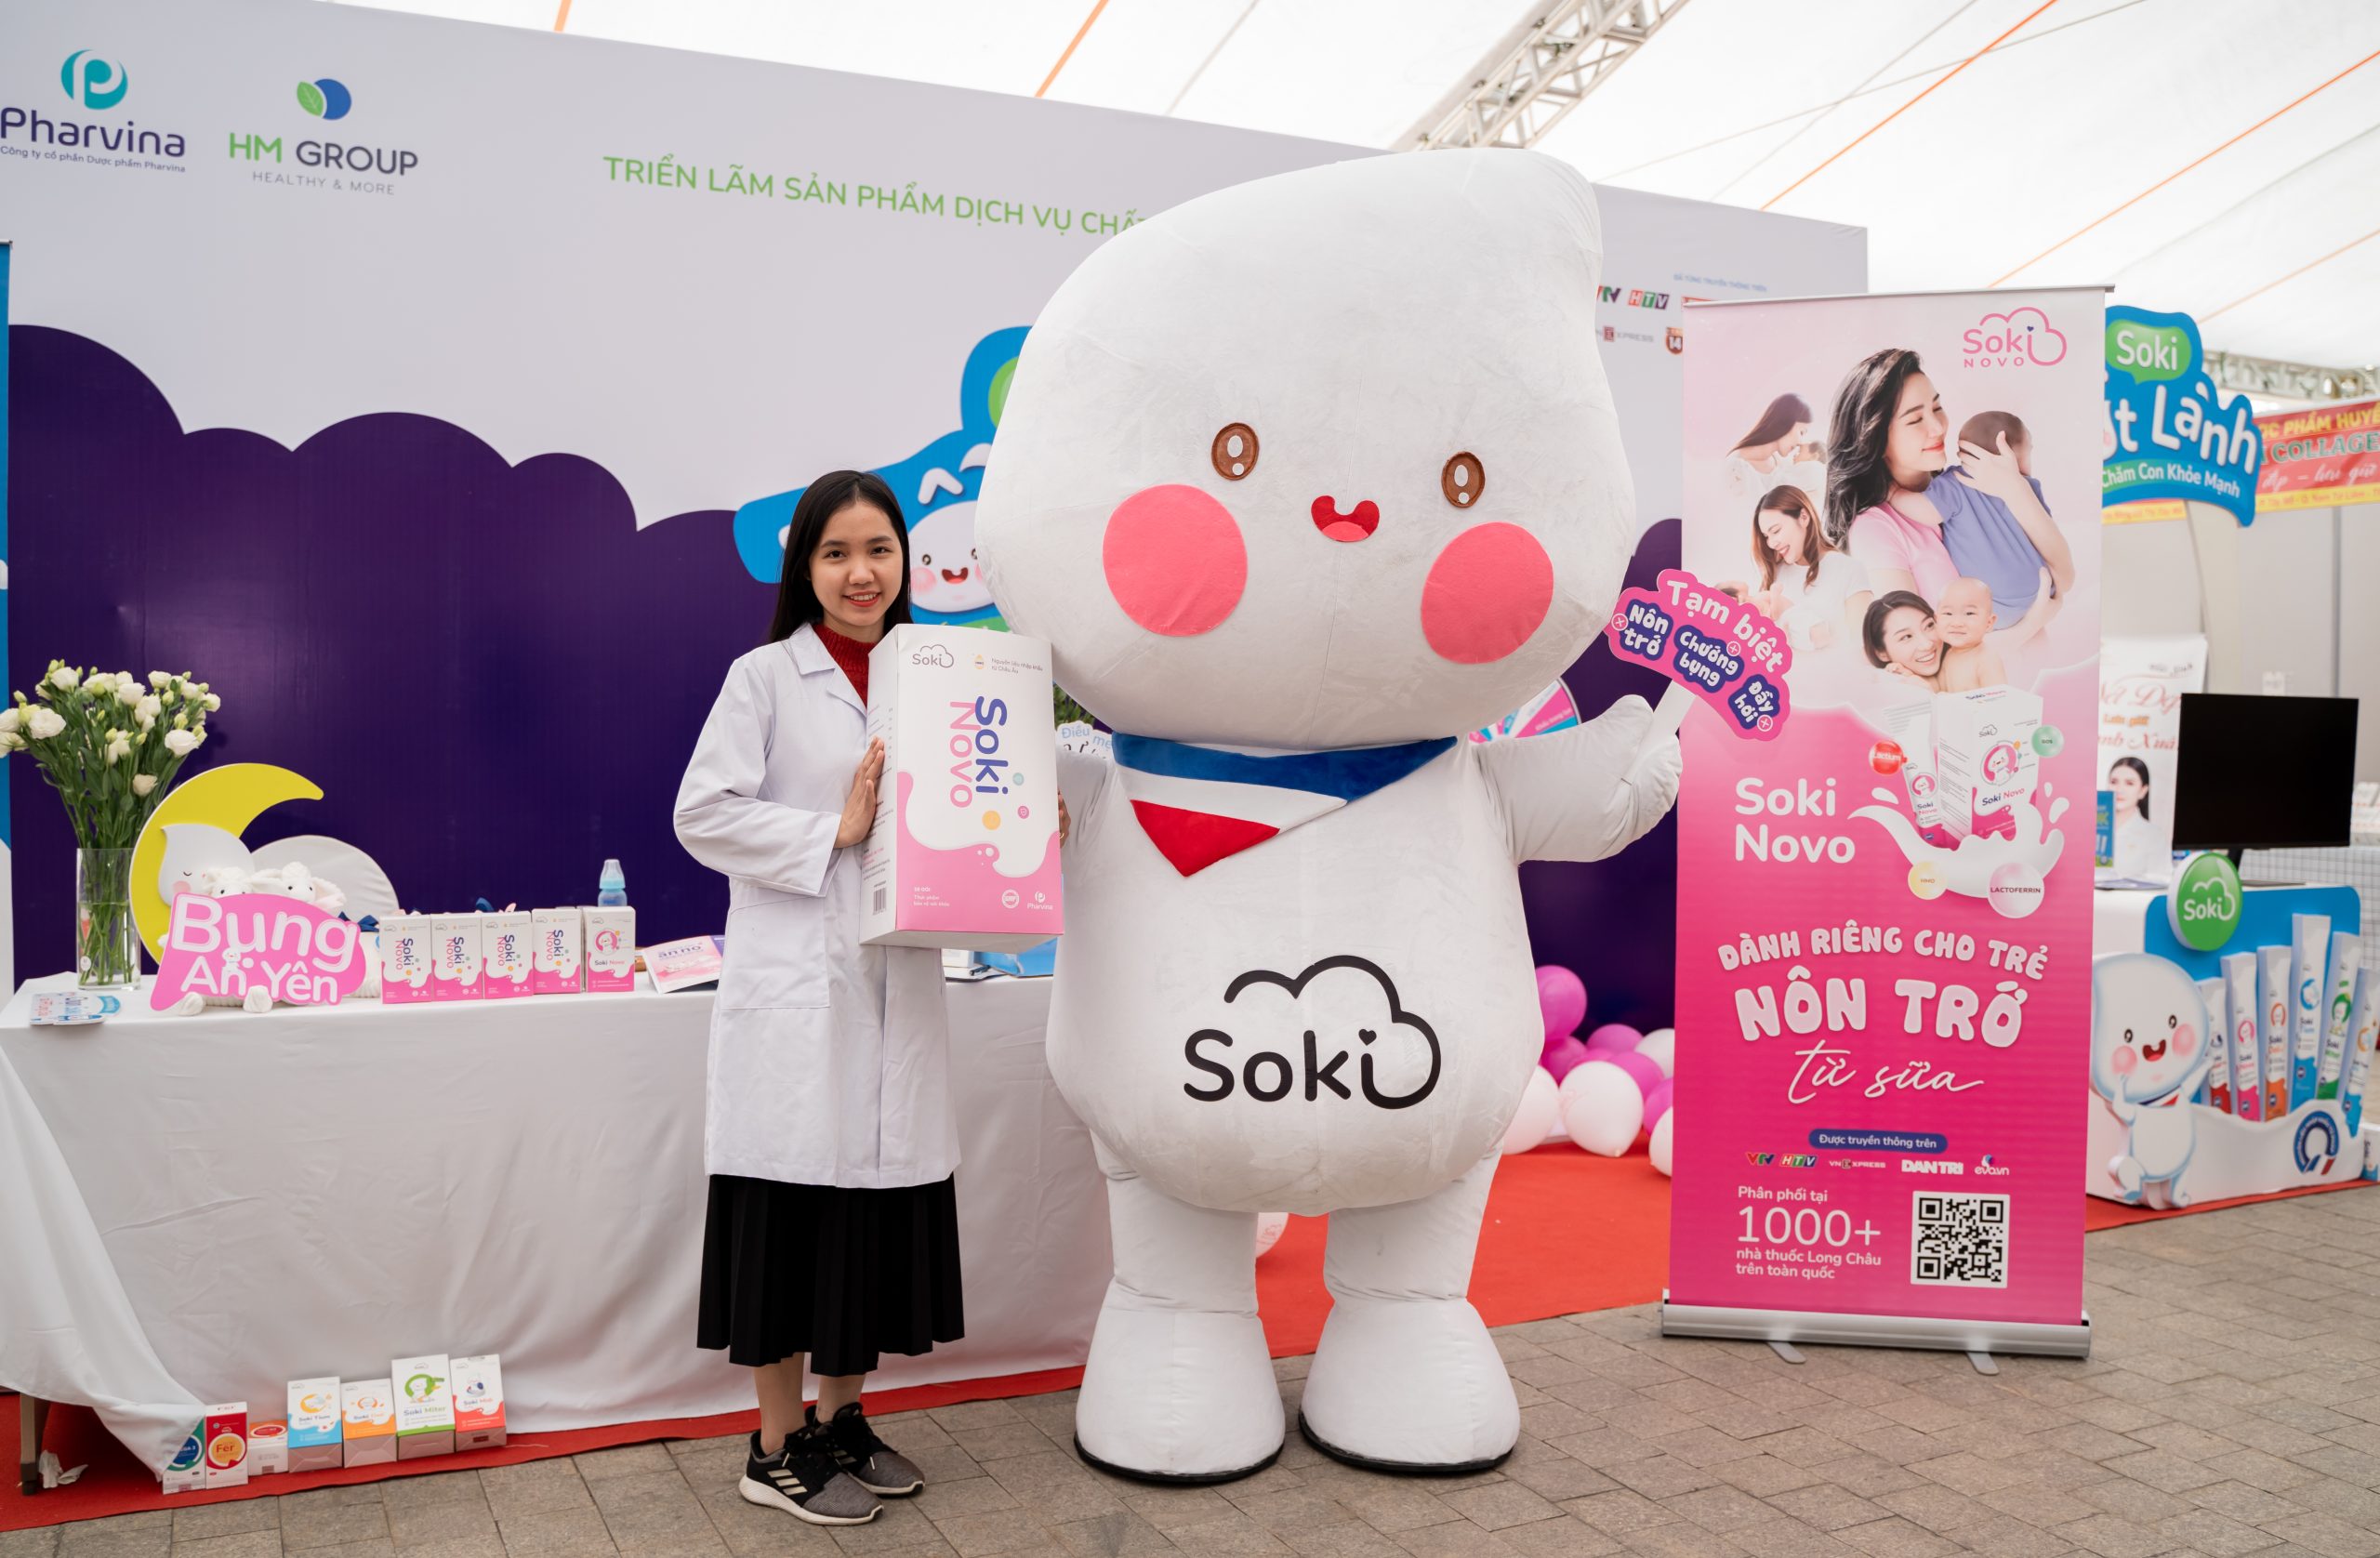 Soki Novo xuất hiện trong triển lãm dịch vụ sản phẩm chất lượng cho phụ nữ, mẹ và bé